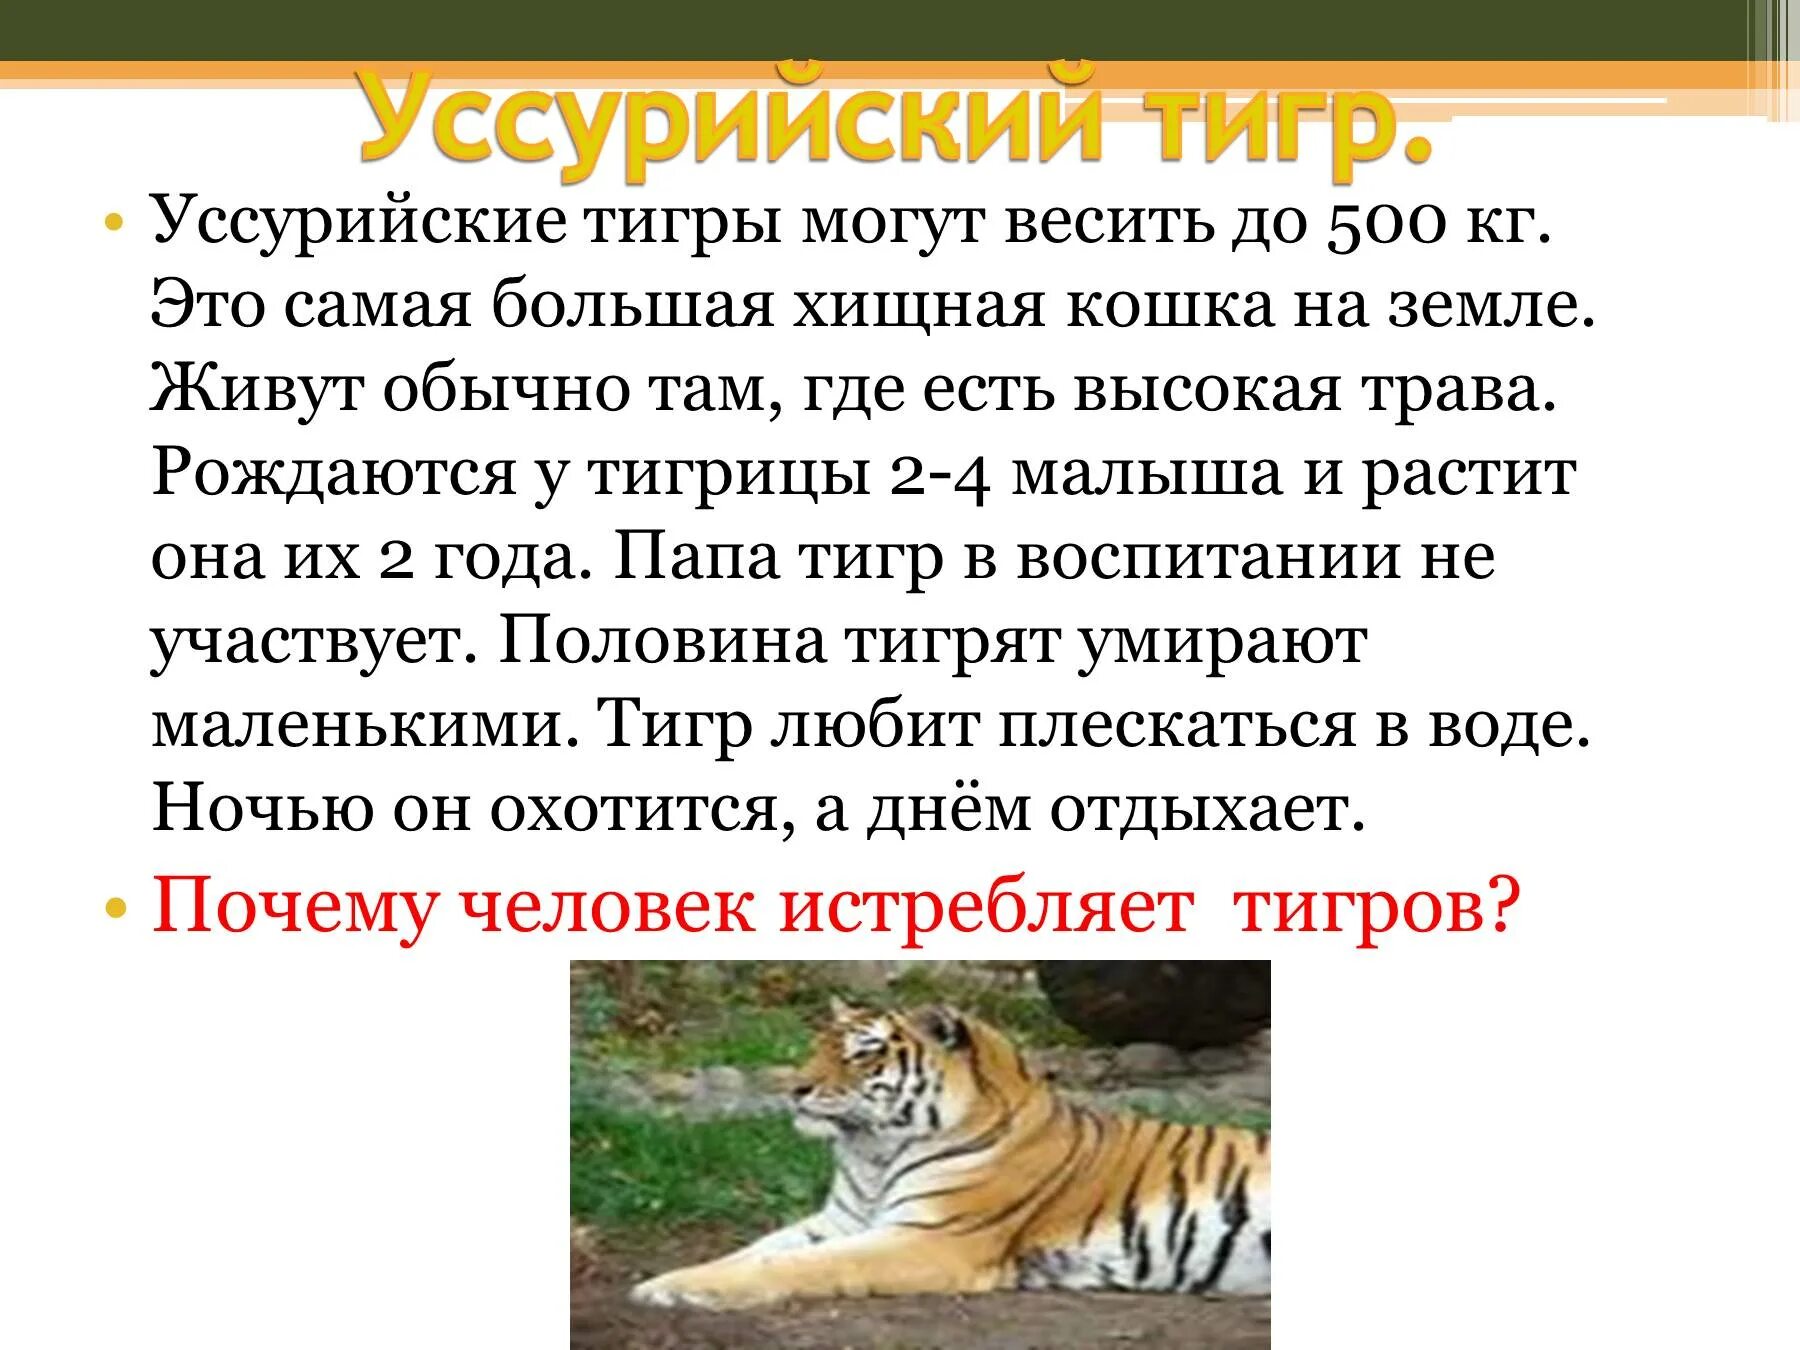 Уссурийский тигр и панда. Описание Уссурийского тигра. Доклад про Уссурийского тигра. О тиграх детям кратко. Рассказ про Уссурийского тигра.